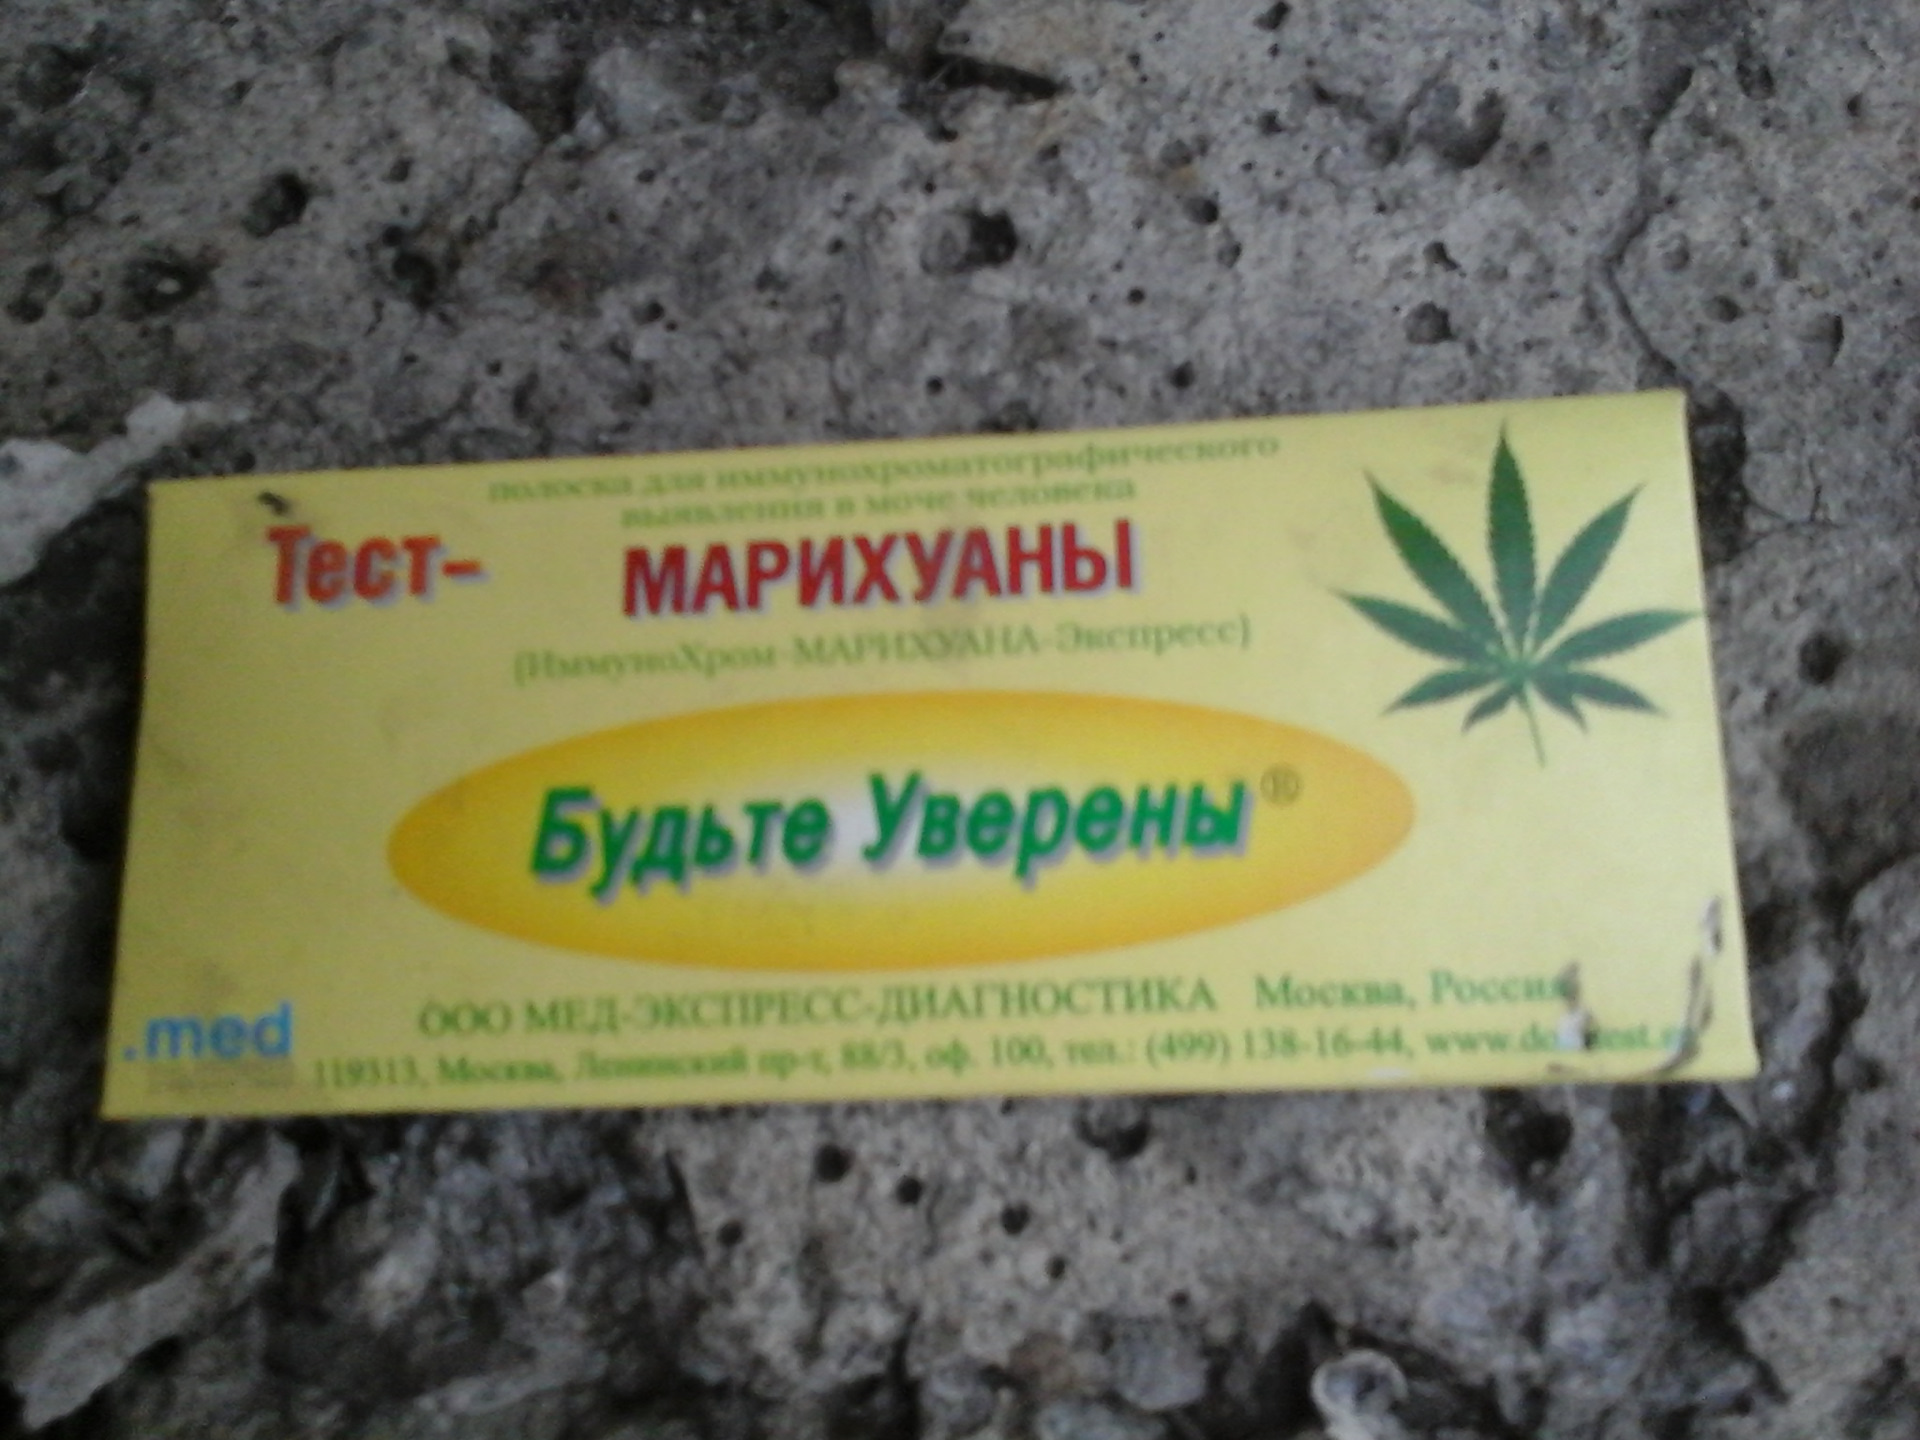 Тест на марихуану купить аптеки макросы от hydra